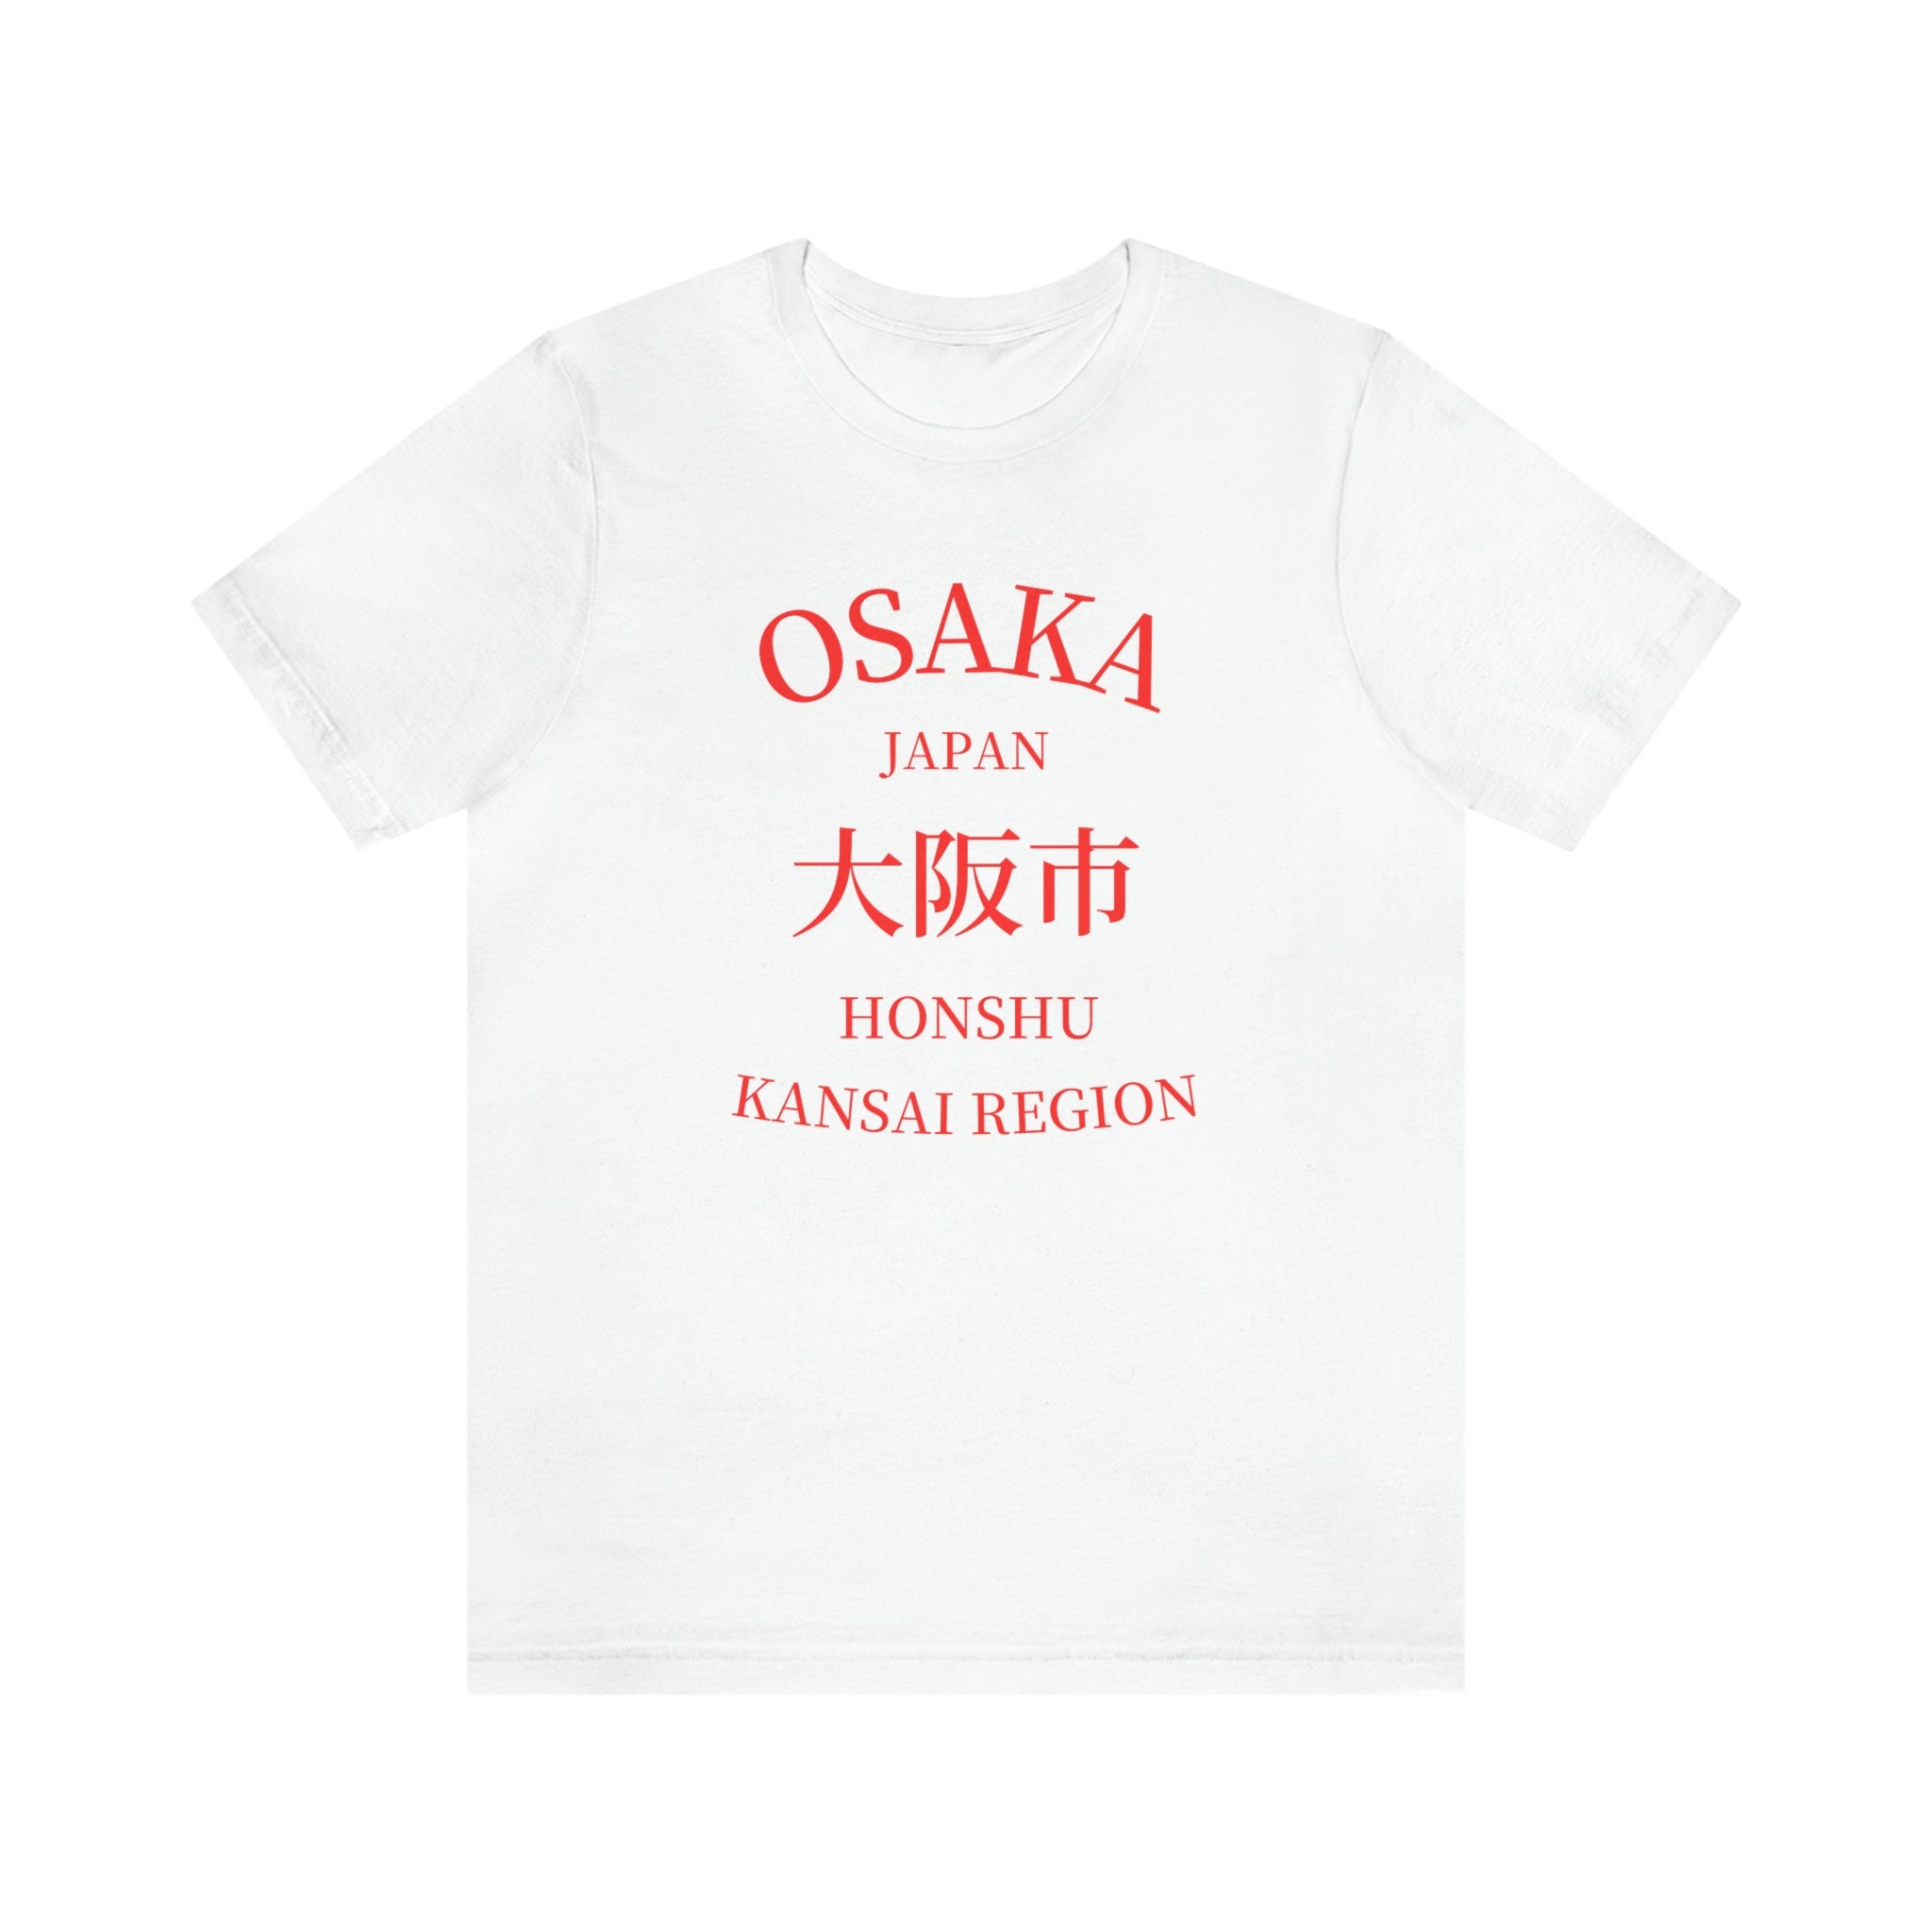 Japan Sleeve T Shirt Etsy